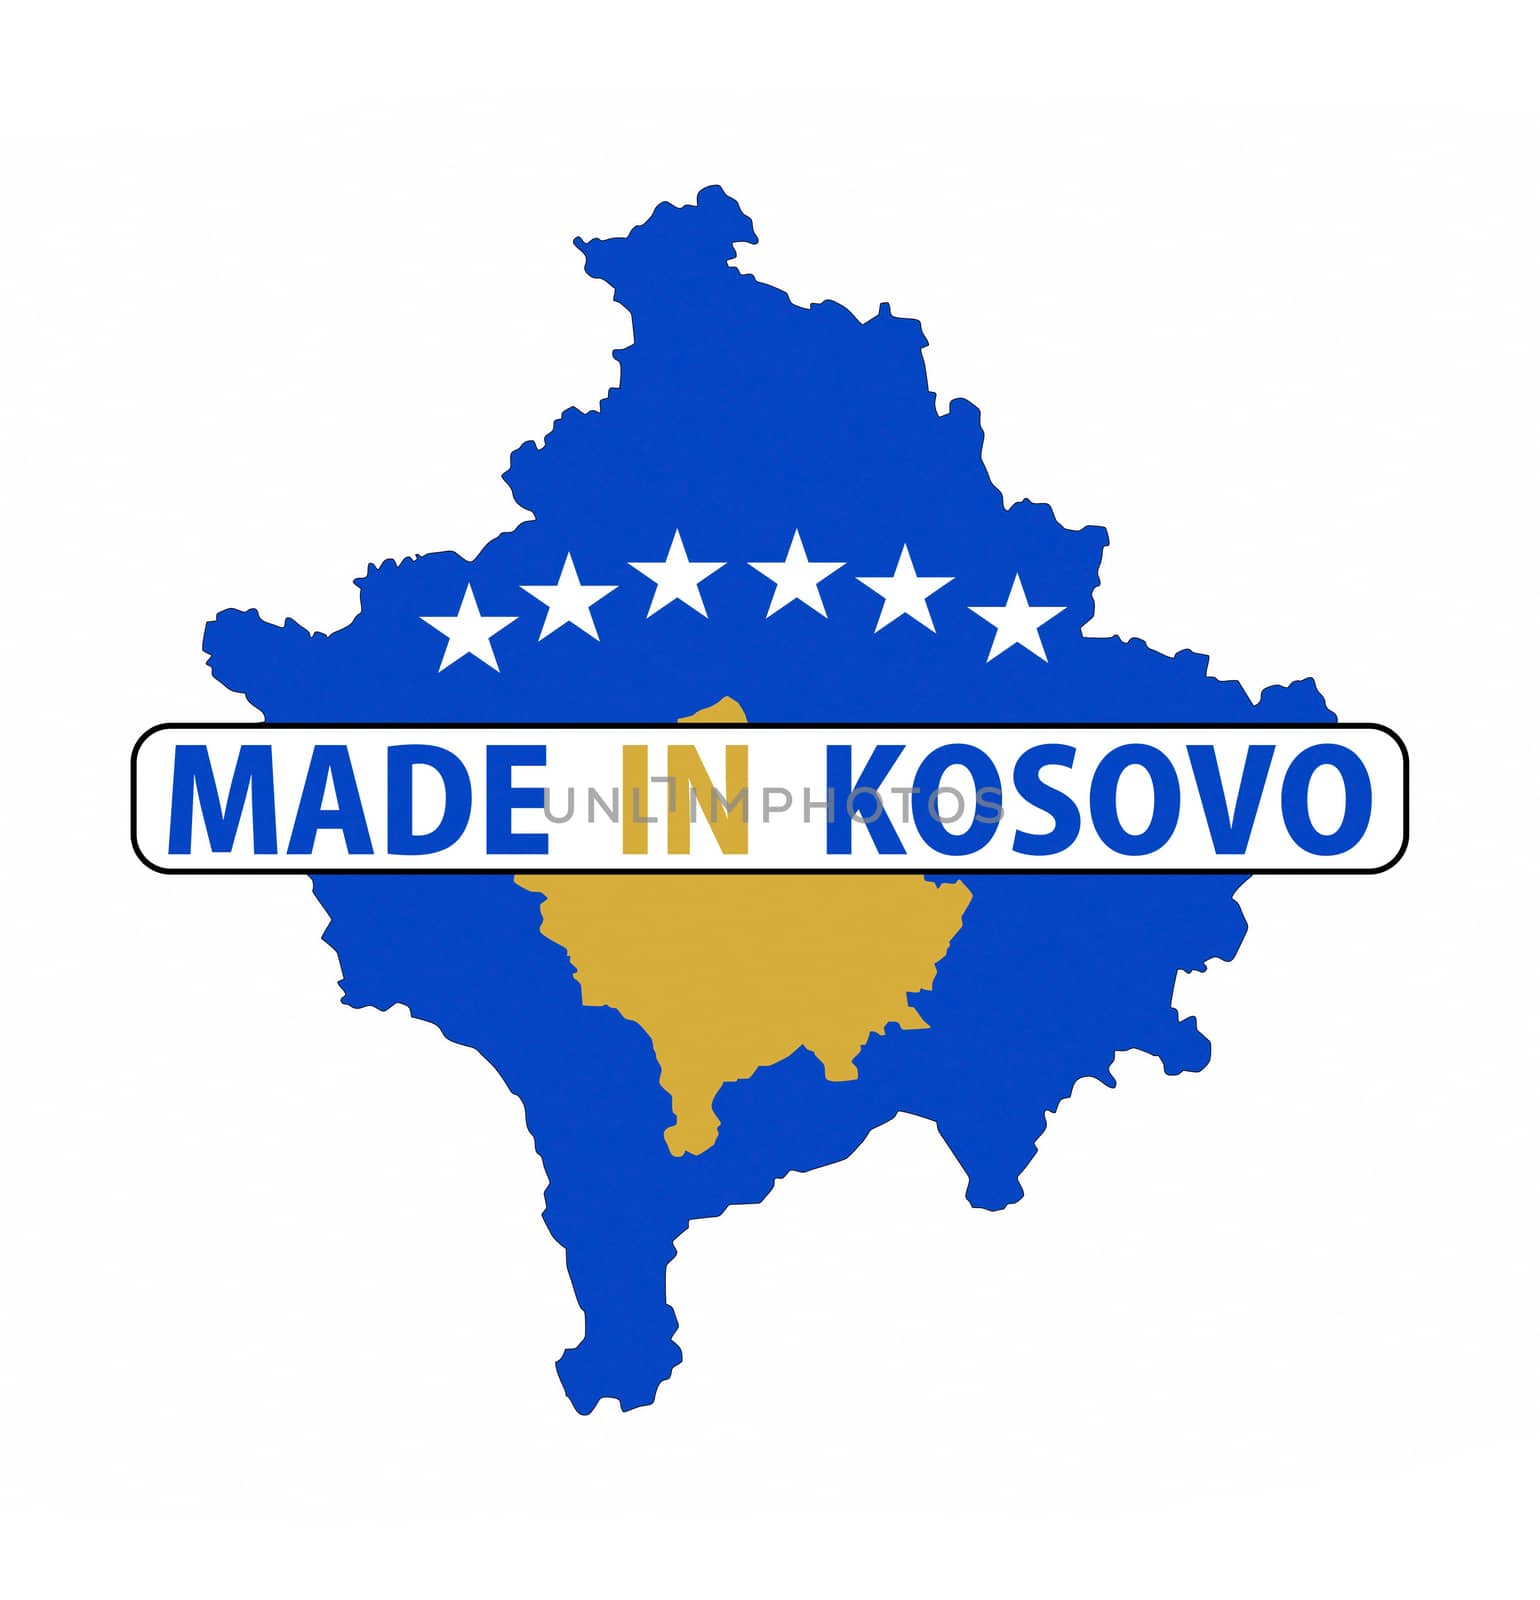 made in kosovo by tony4urban